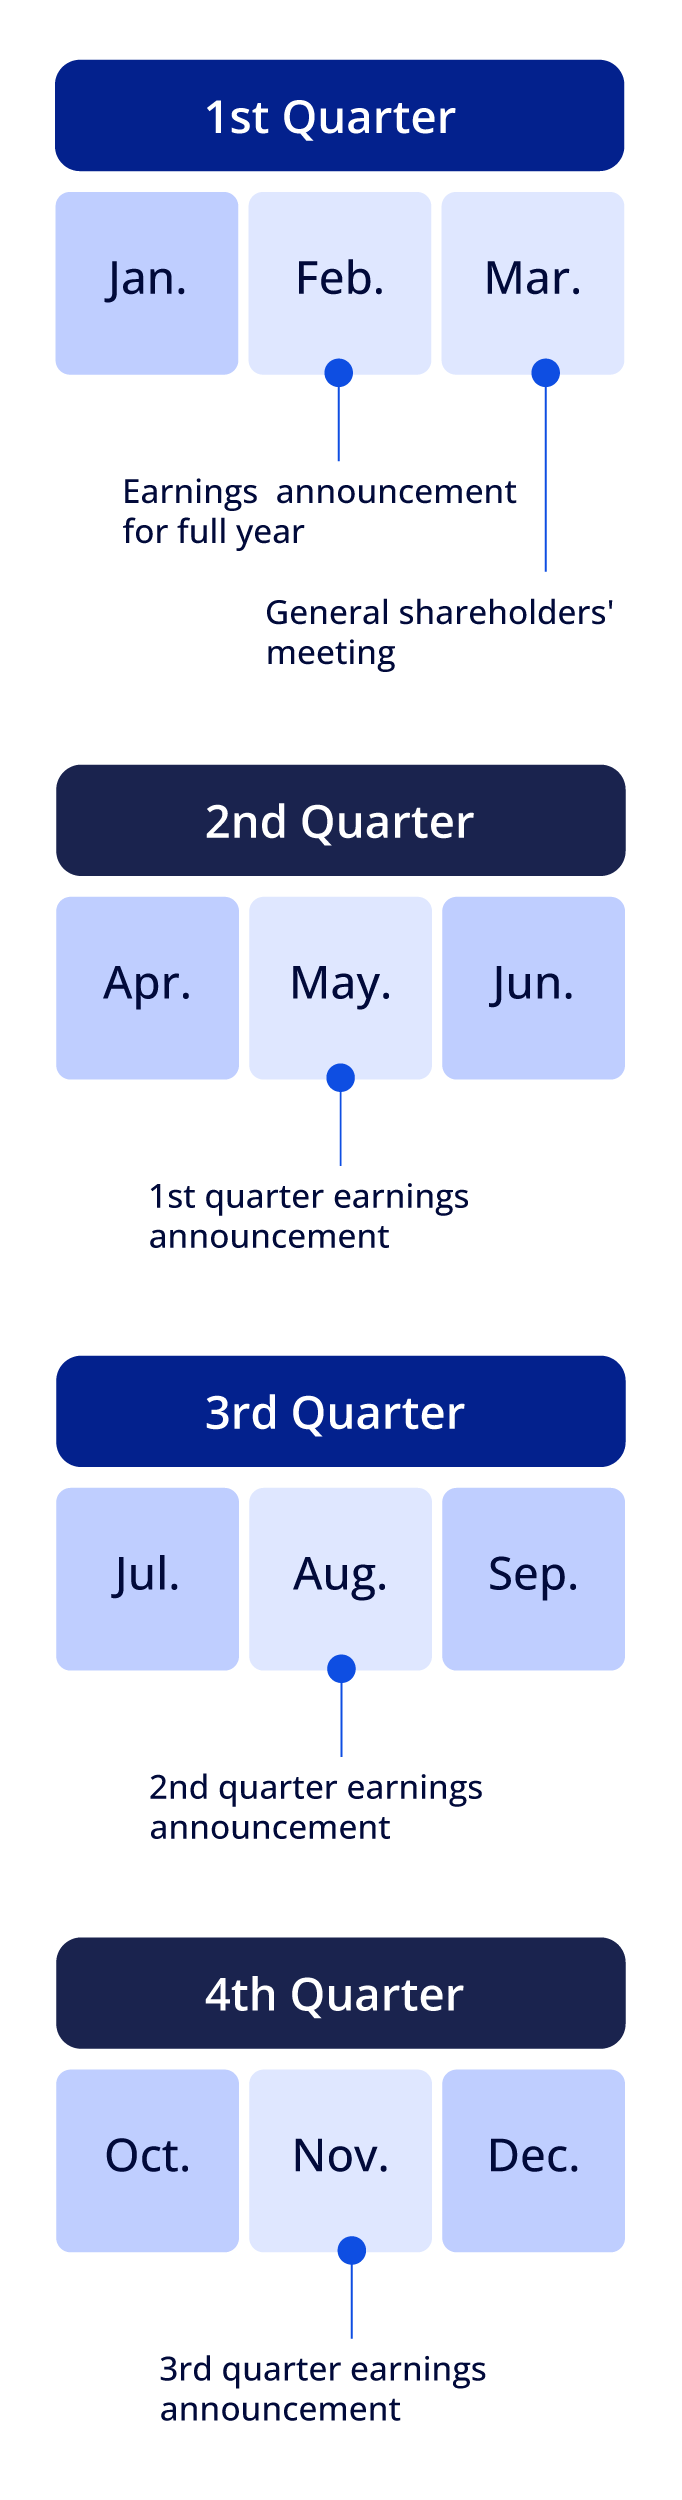 IR_Financial Calendar_EN_Mobile_v02